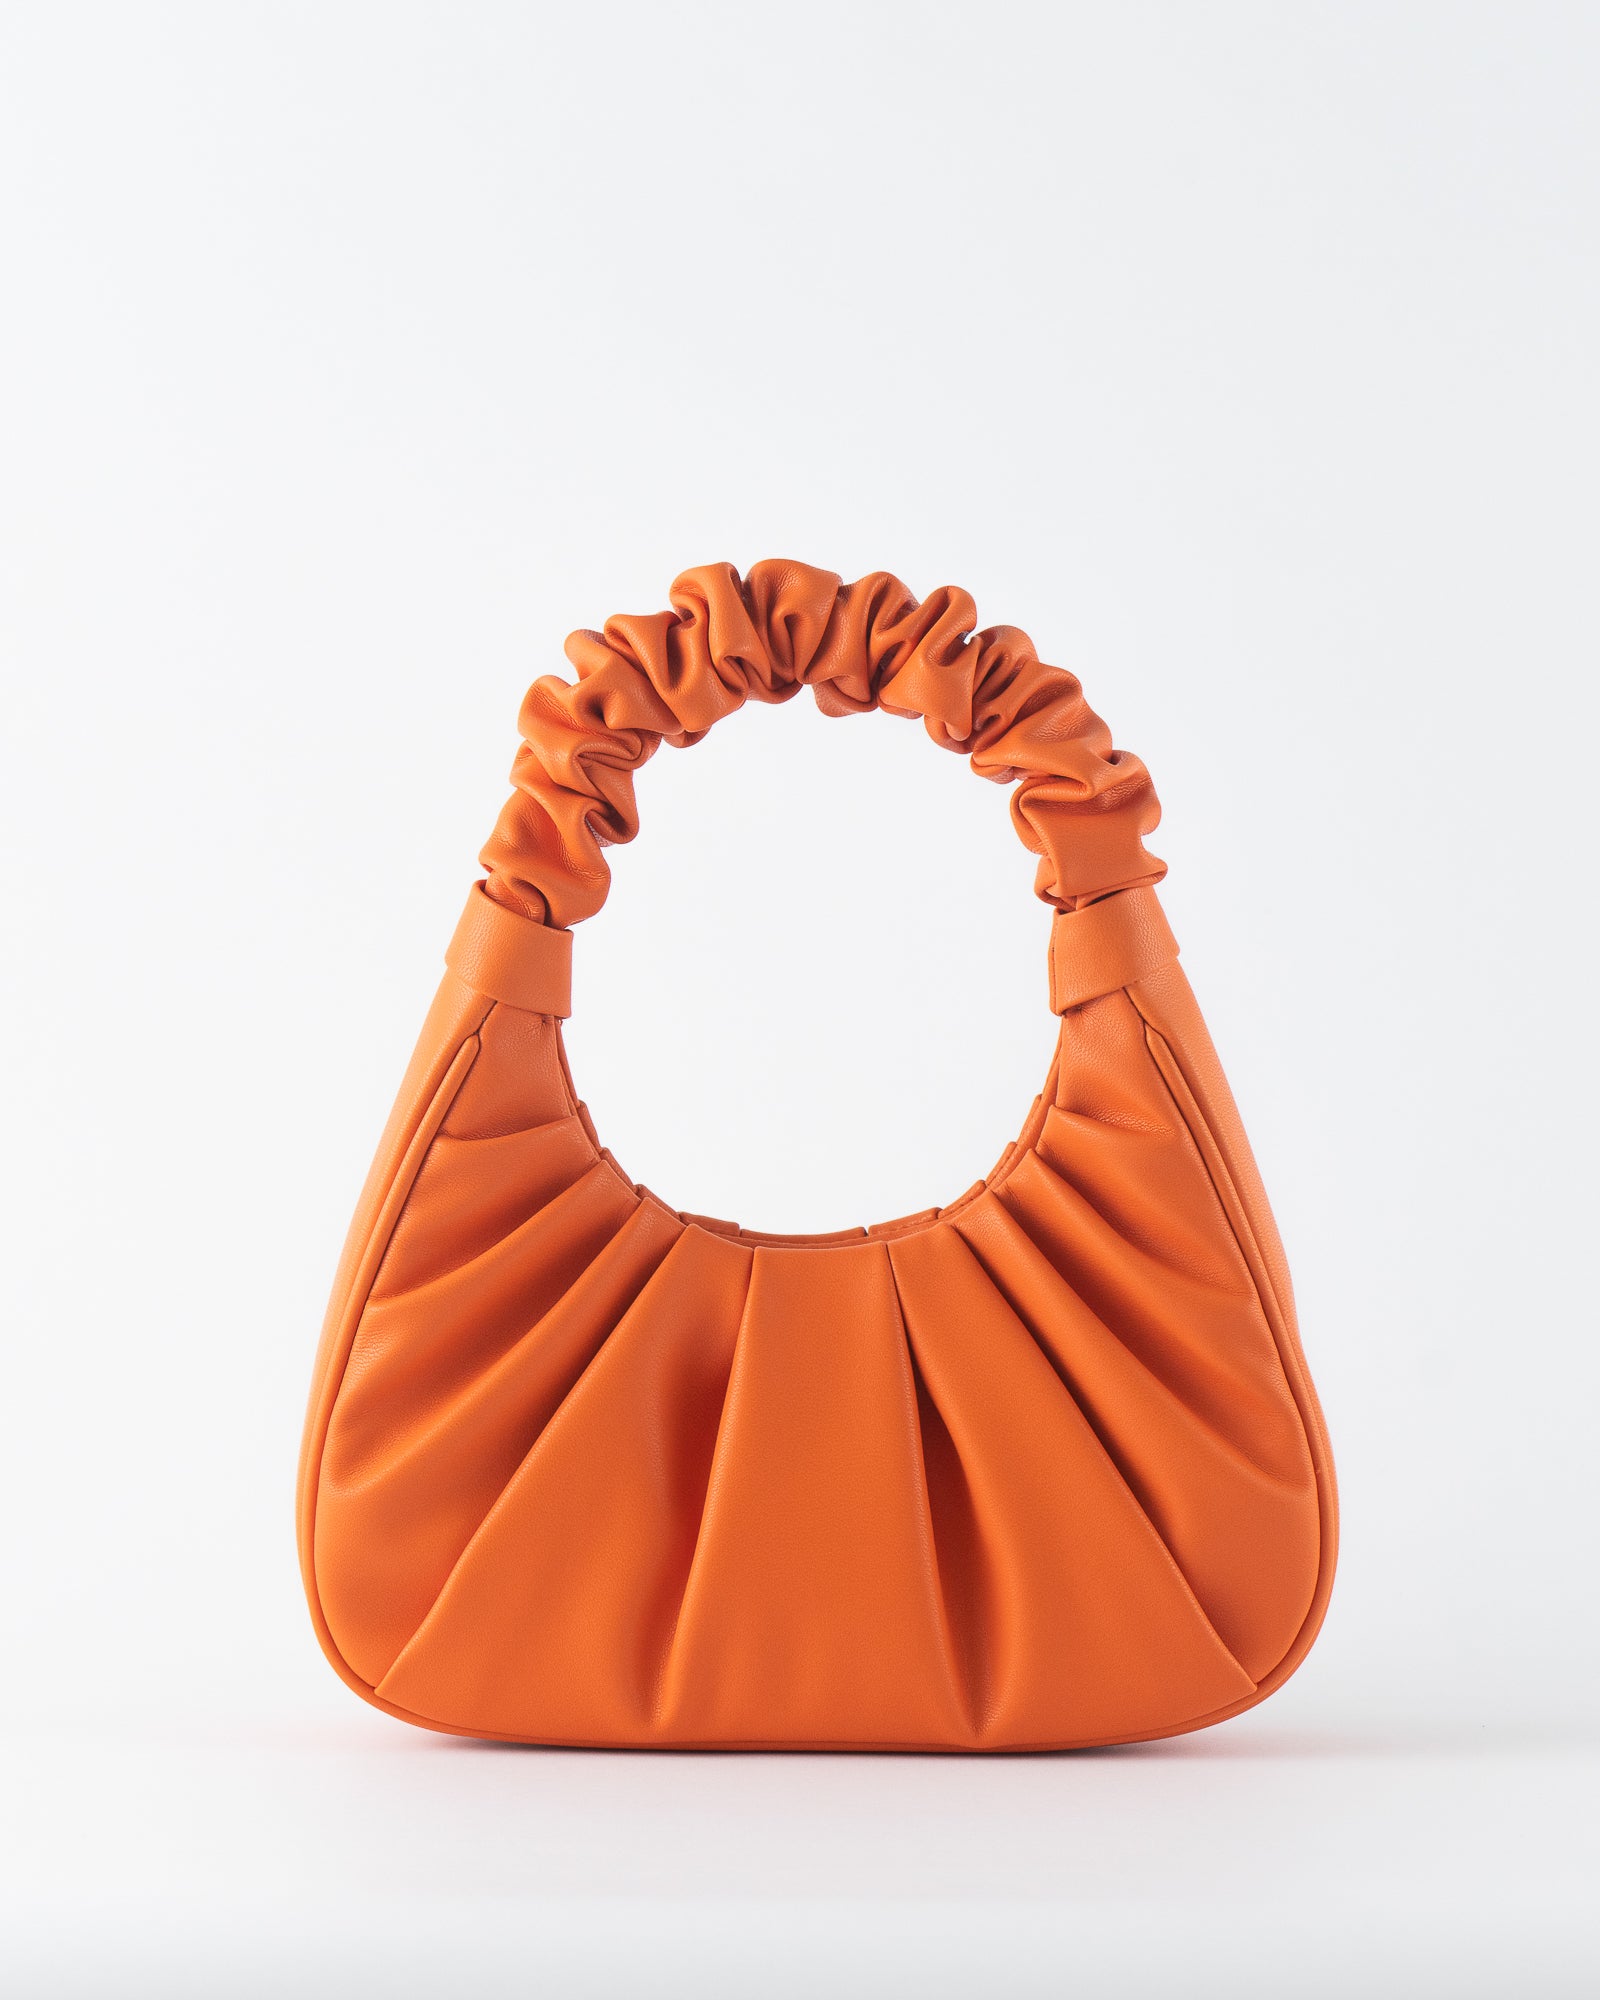 Zipper Shoulder Bag Ruched Faux Leather Hobo Bag Solid Cloud-shaped Bag  Women | eBay